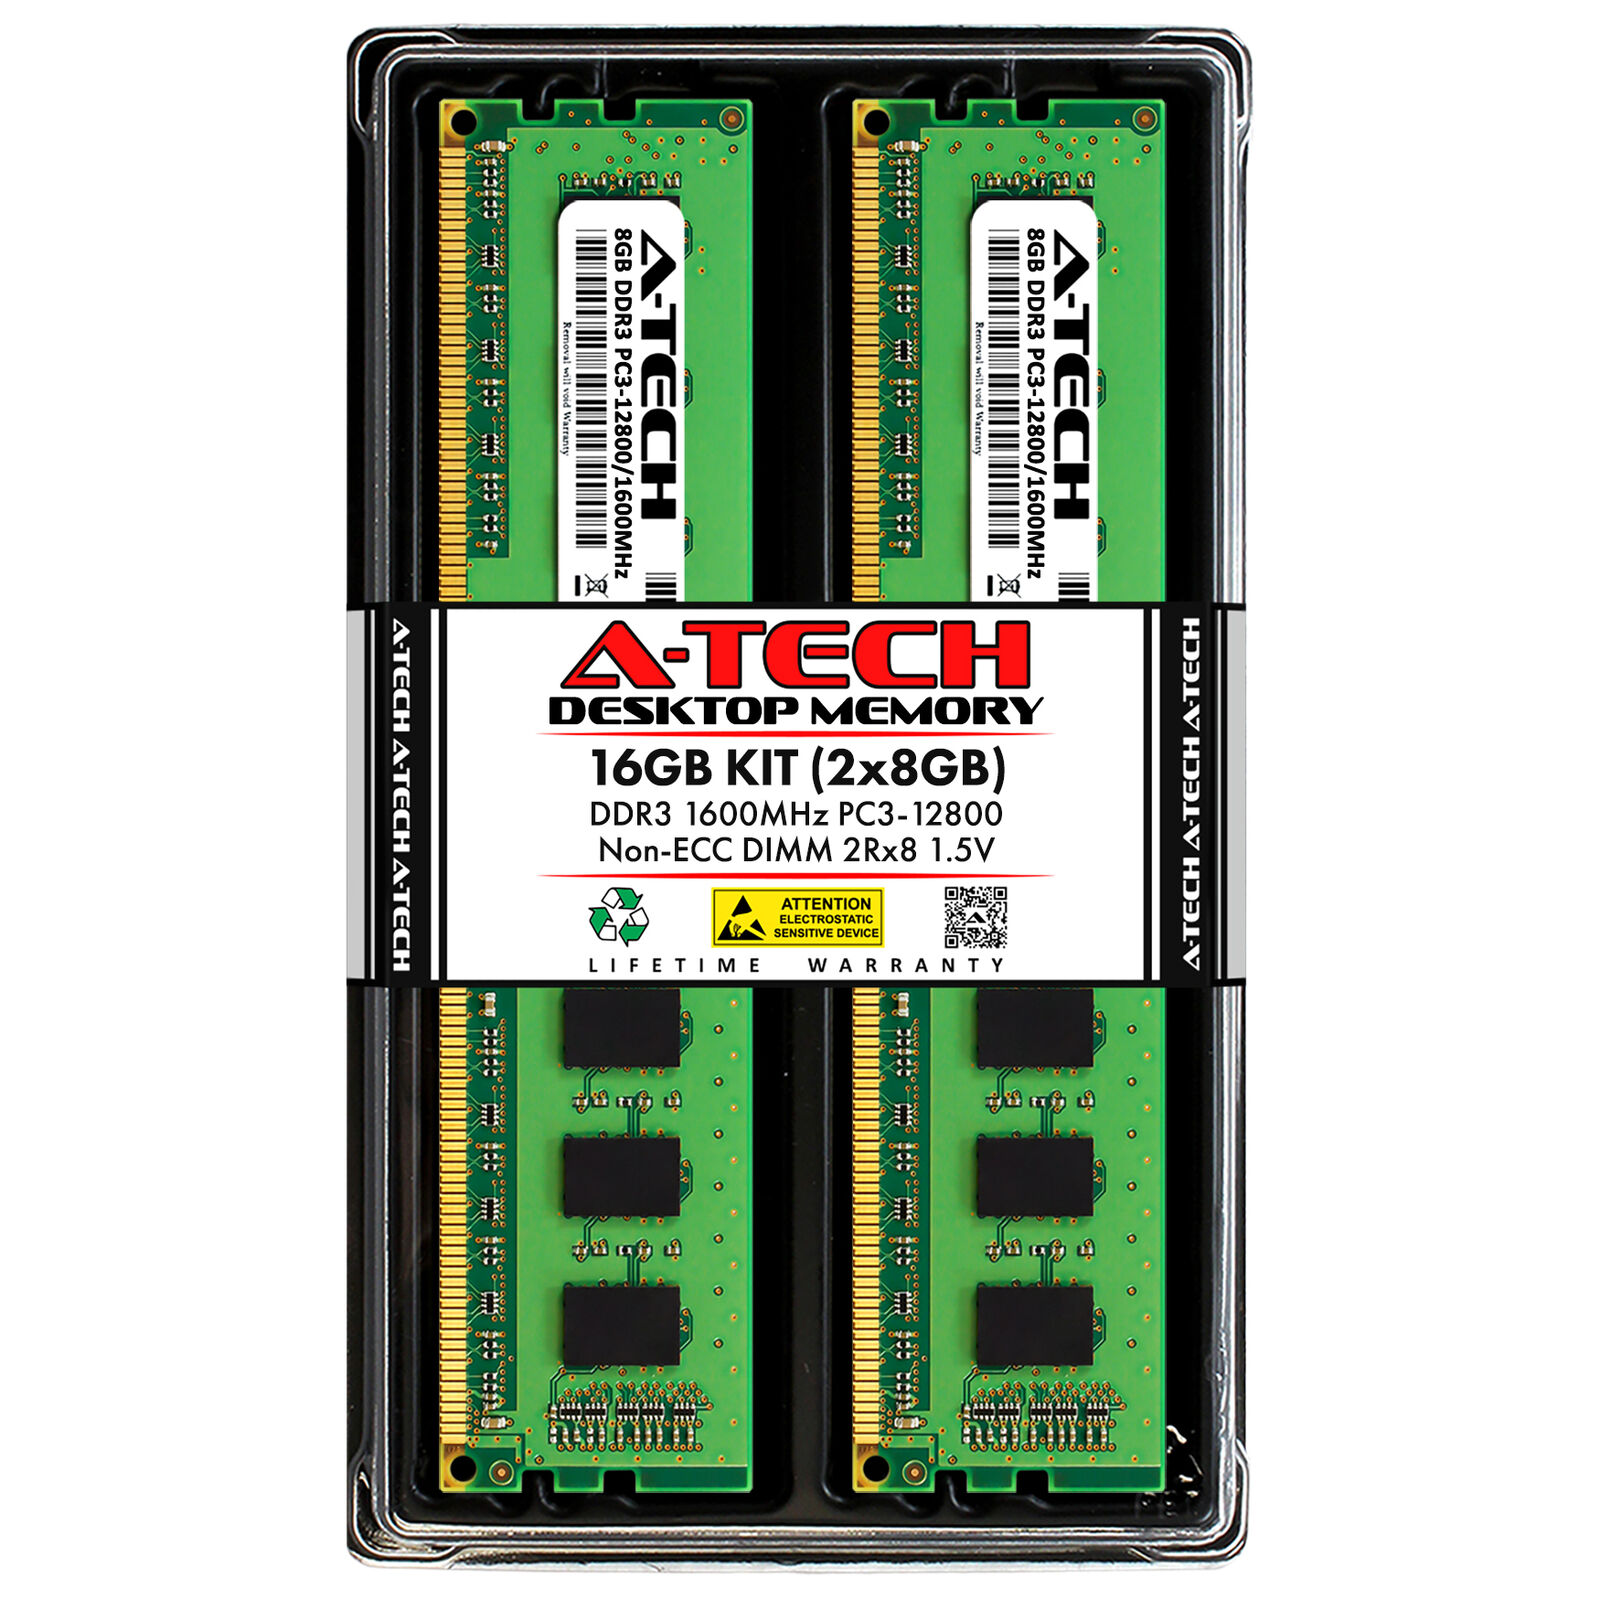 16GB 2x8GB PC3-12800U ASUS B75-M LX PLUS H61-I P8P67 WS Revolution Memory RAM